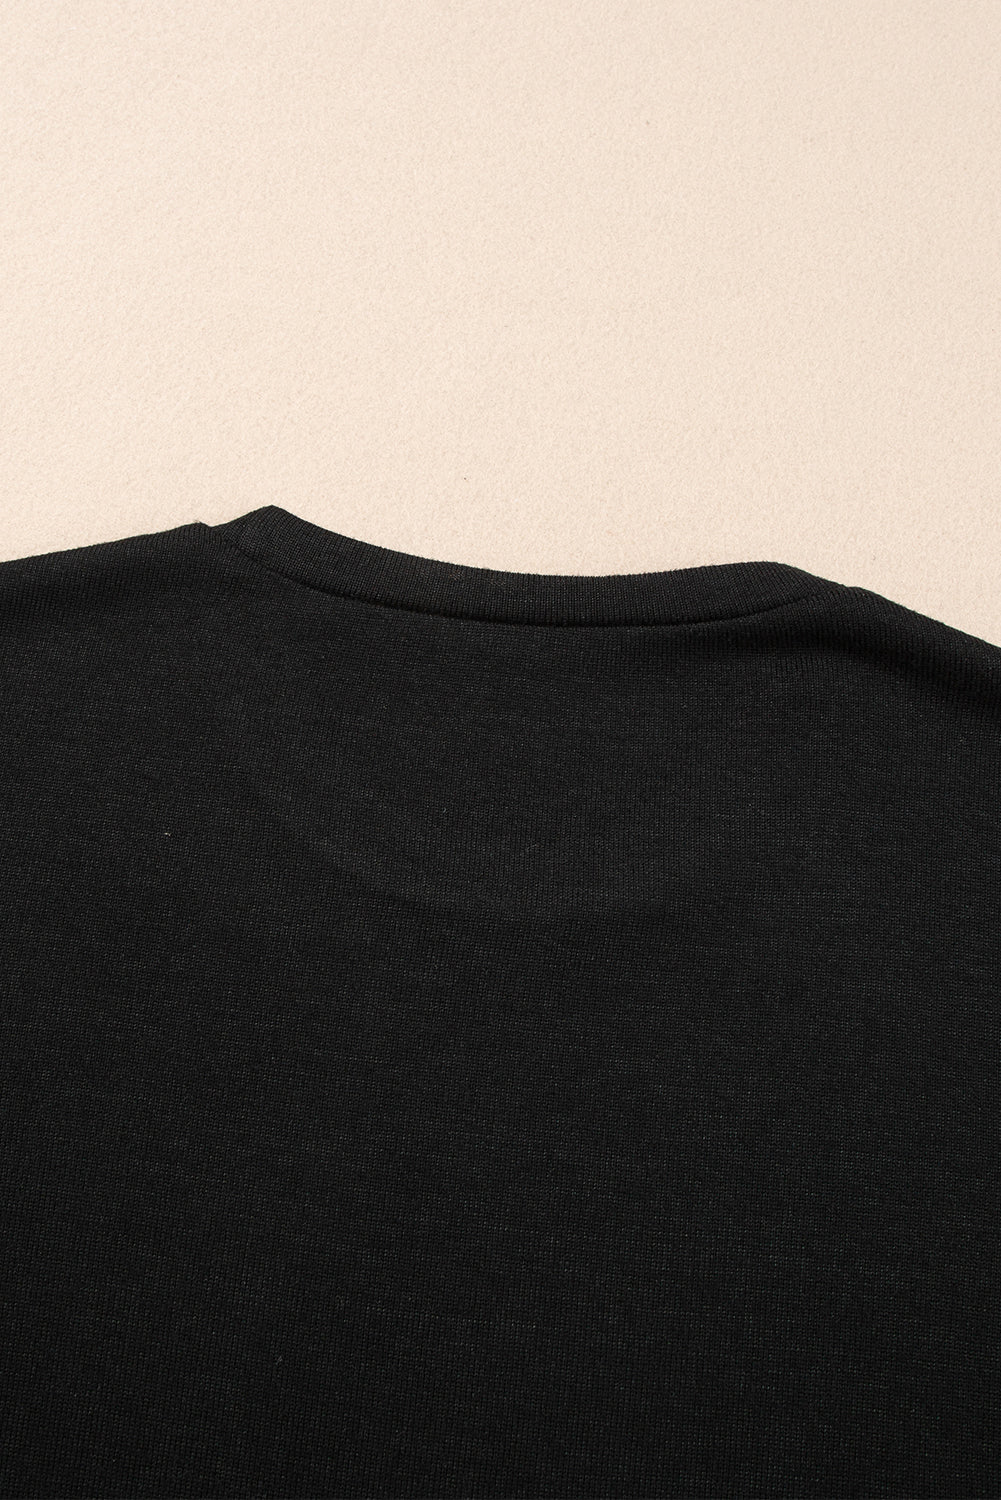 Schwarzes, geripptes Rundhals-T-Shirt mit Spleißärmeln